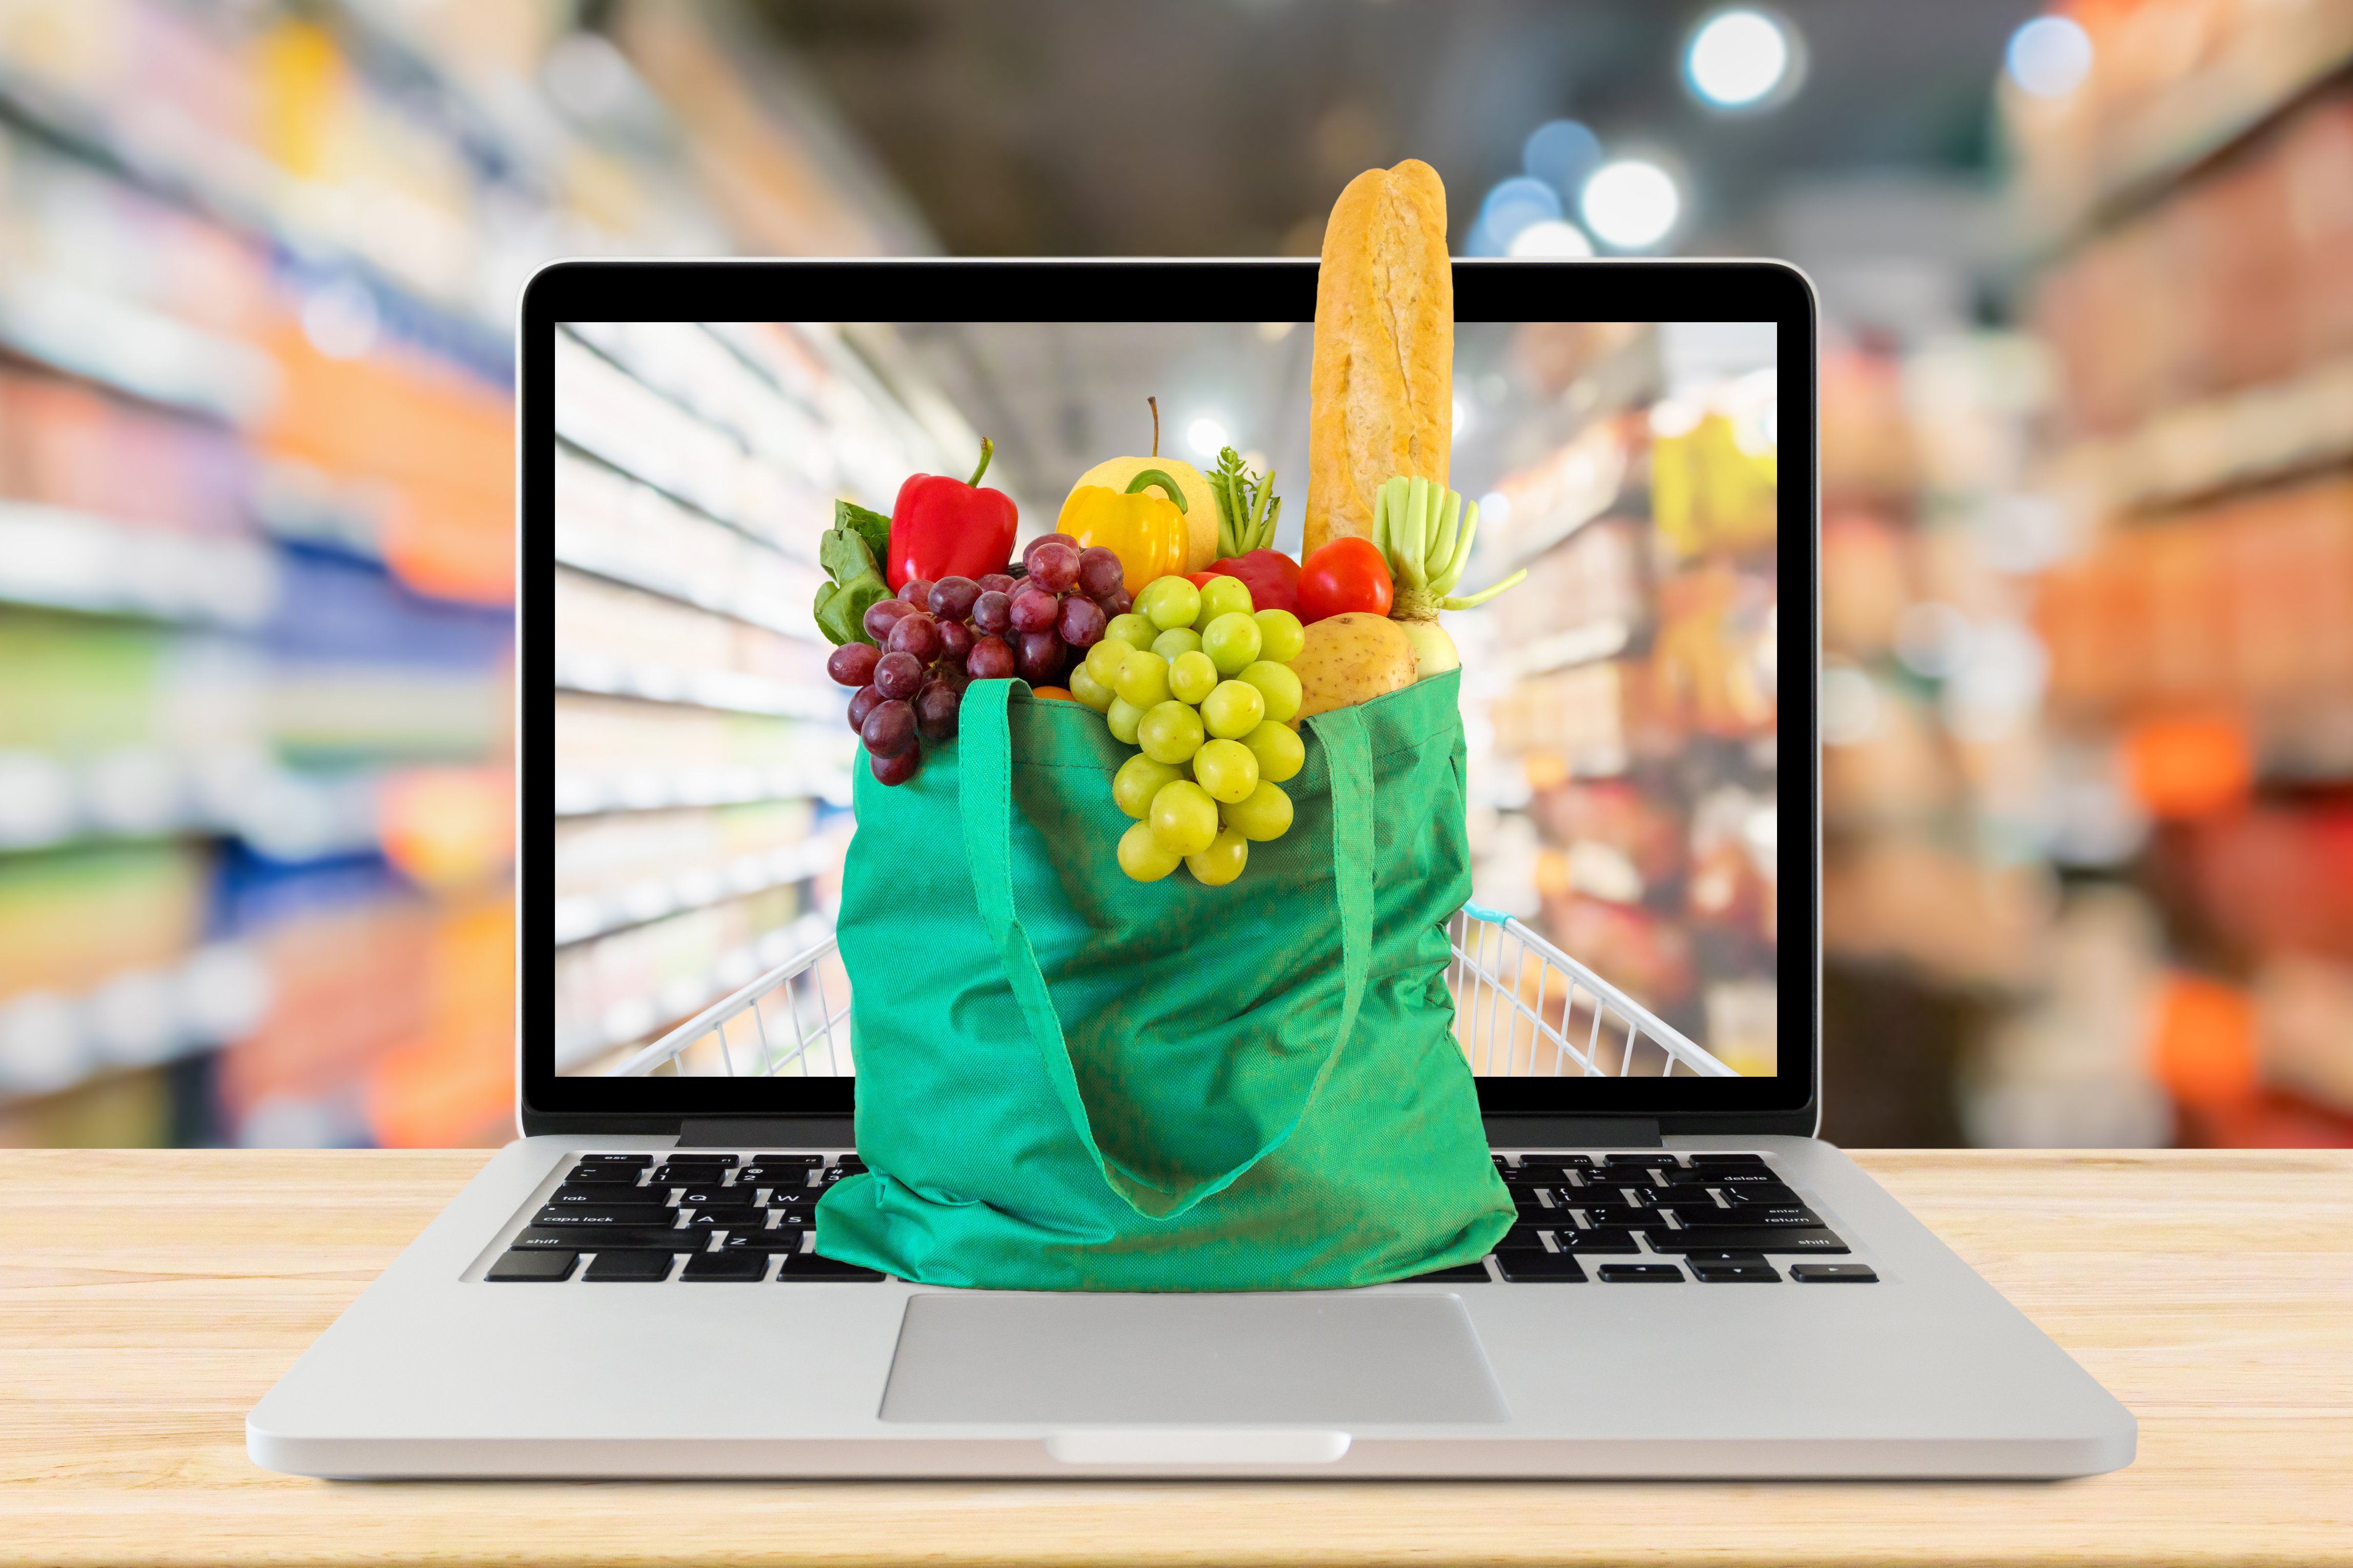 Купить продукты с доставкой в интернете. Покупки в интернете. Интернет торговля в интернете. Покупки еды в интернете.